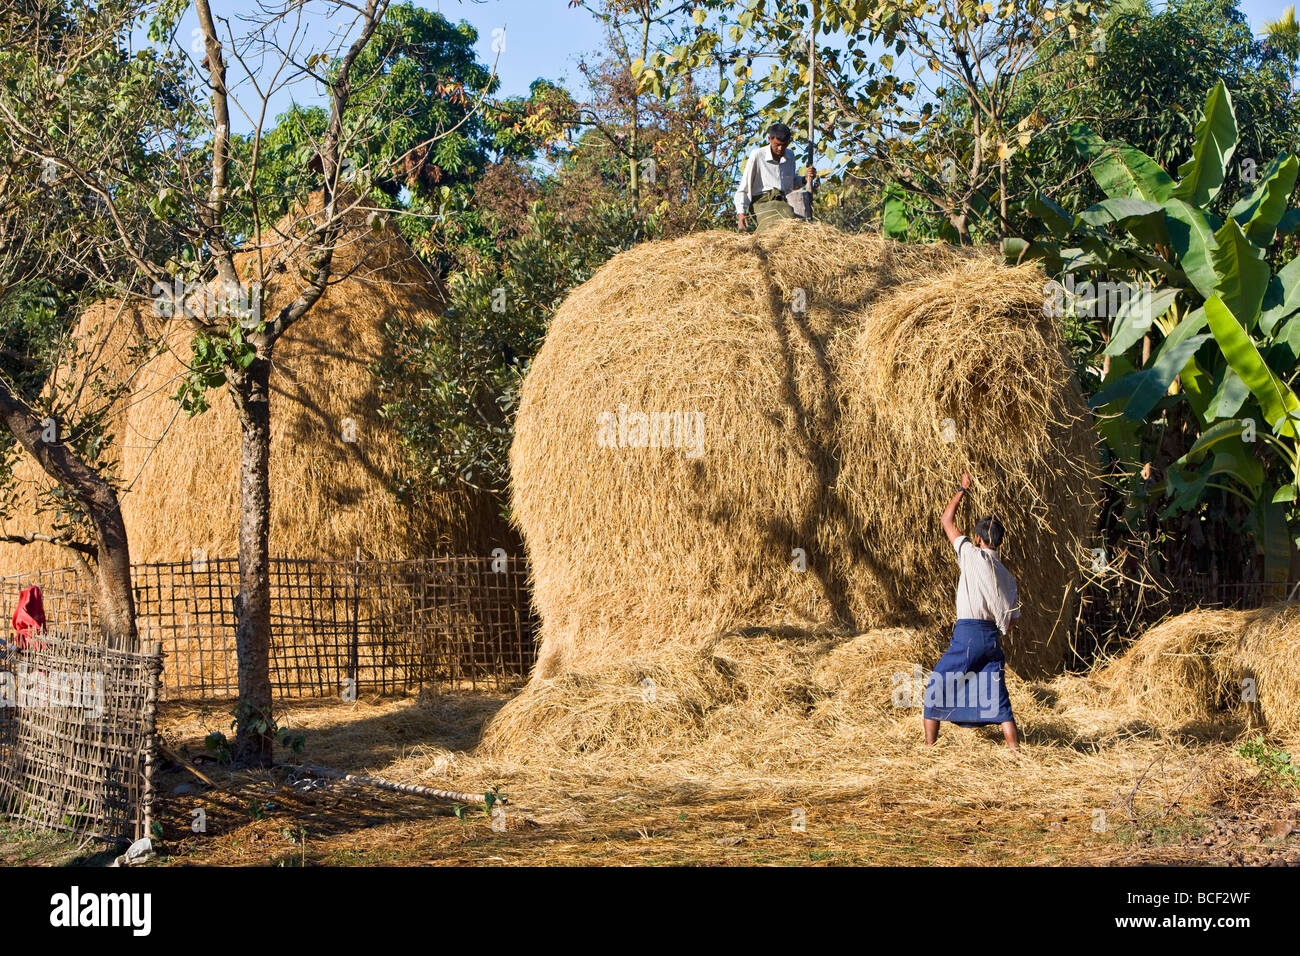 Myanmar Birmania, laici Mro fiume. Gli agricoltori Rakhine costruire haystacks con paglia di riso lungo le rive del lay Myo fiume. Foto Stock